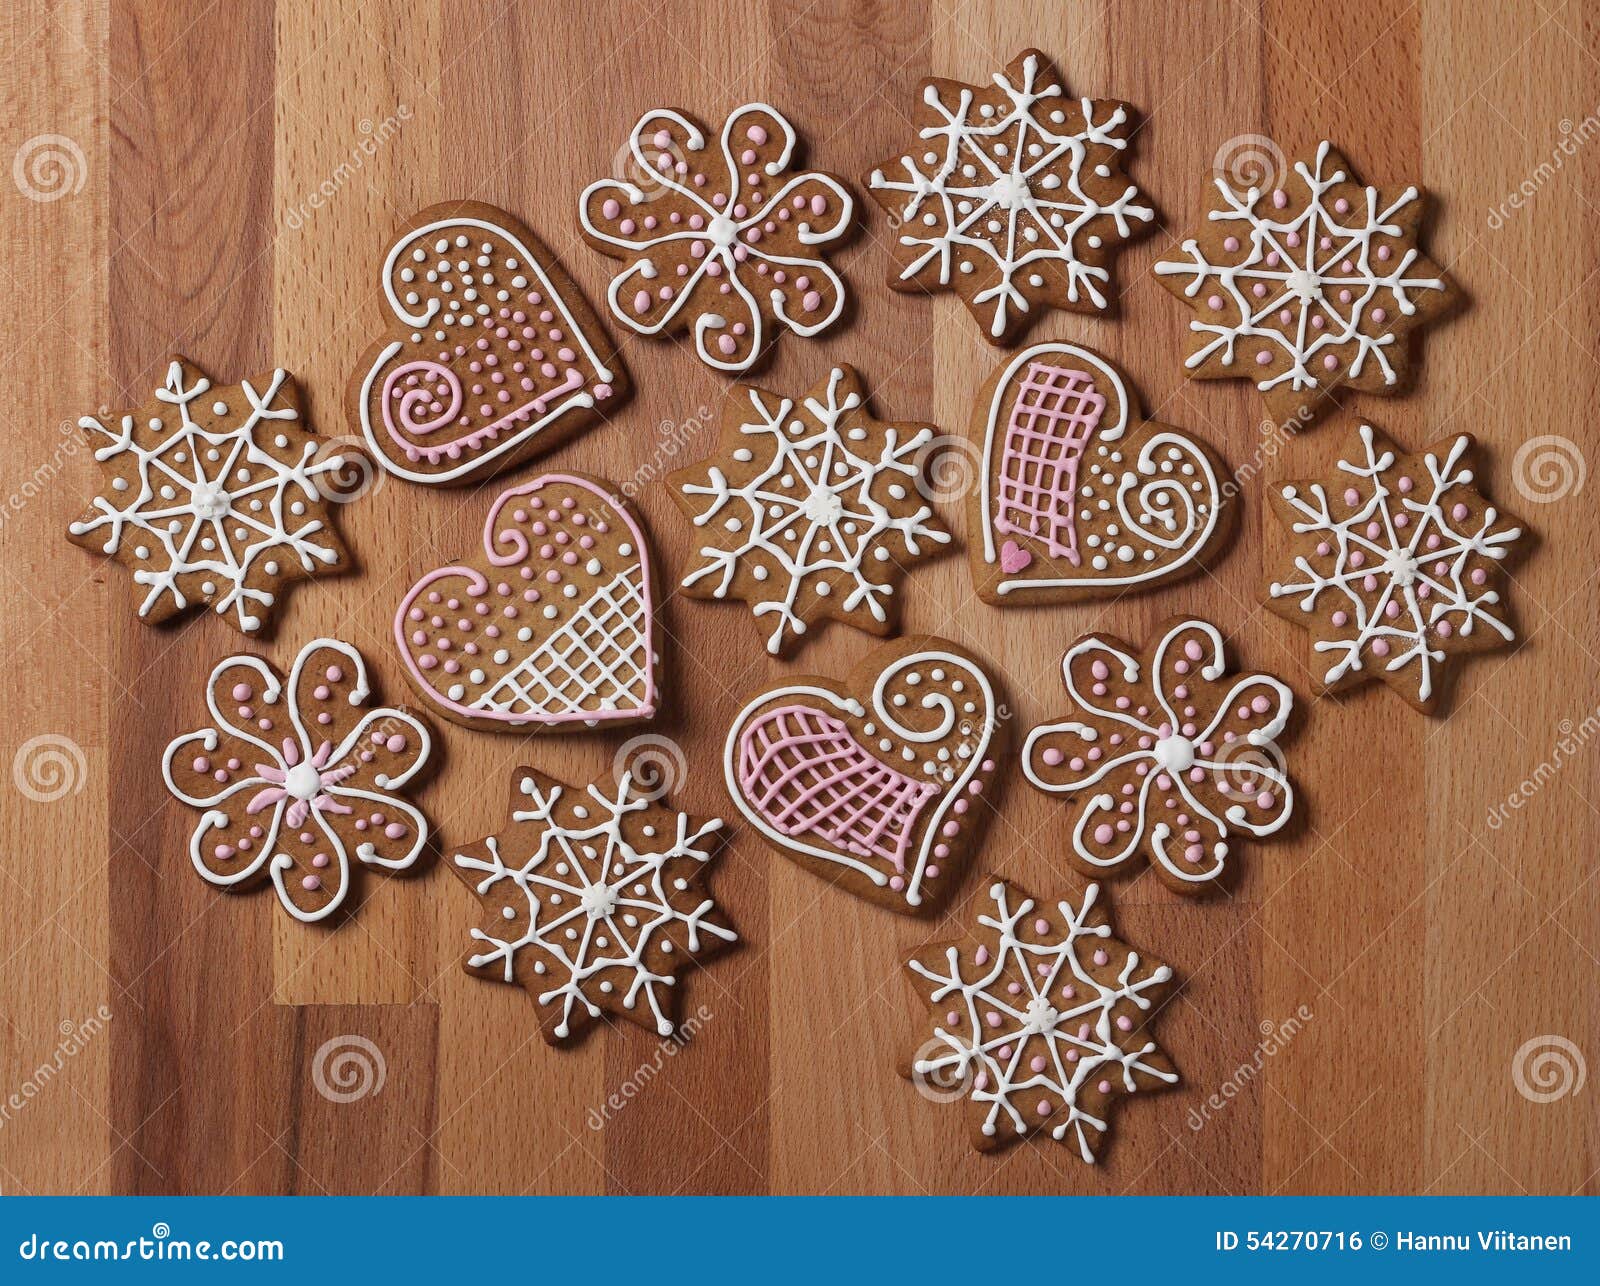 Biscotti Decorati Natale.Biscotti Decorati Del Pan Di Zenzero Di Natale Fotografia Stock Immagine Di Tradizionale Legno 54270716